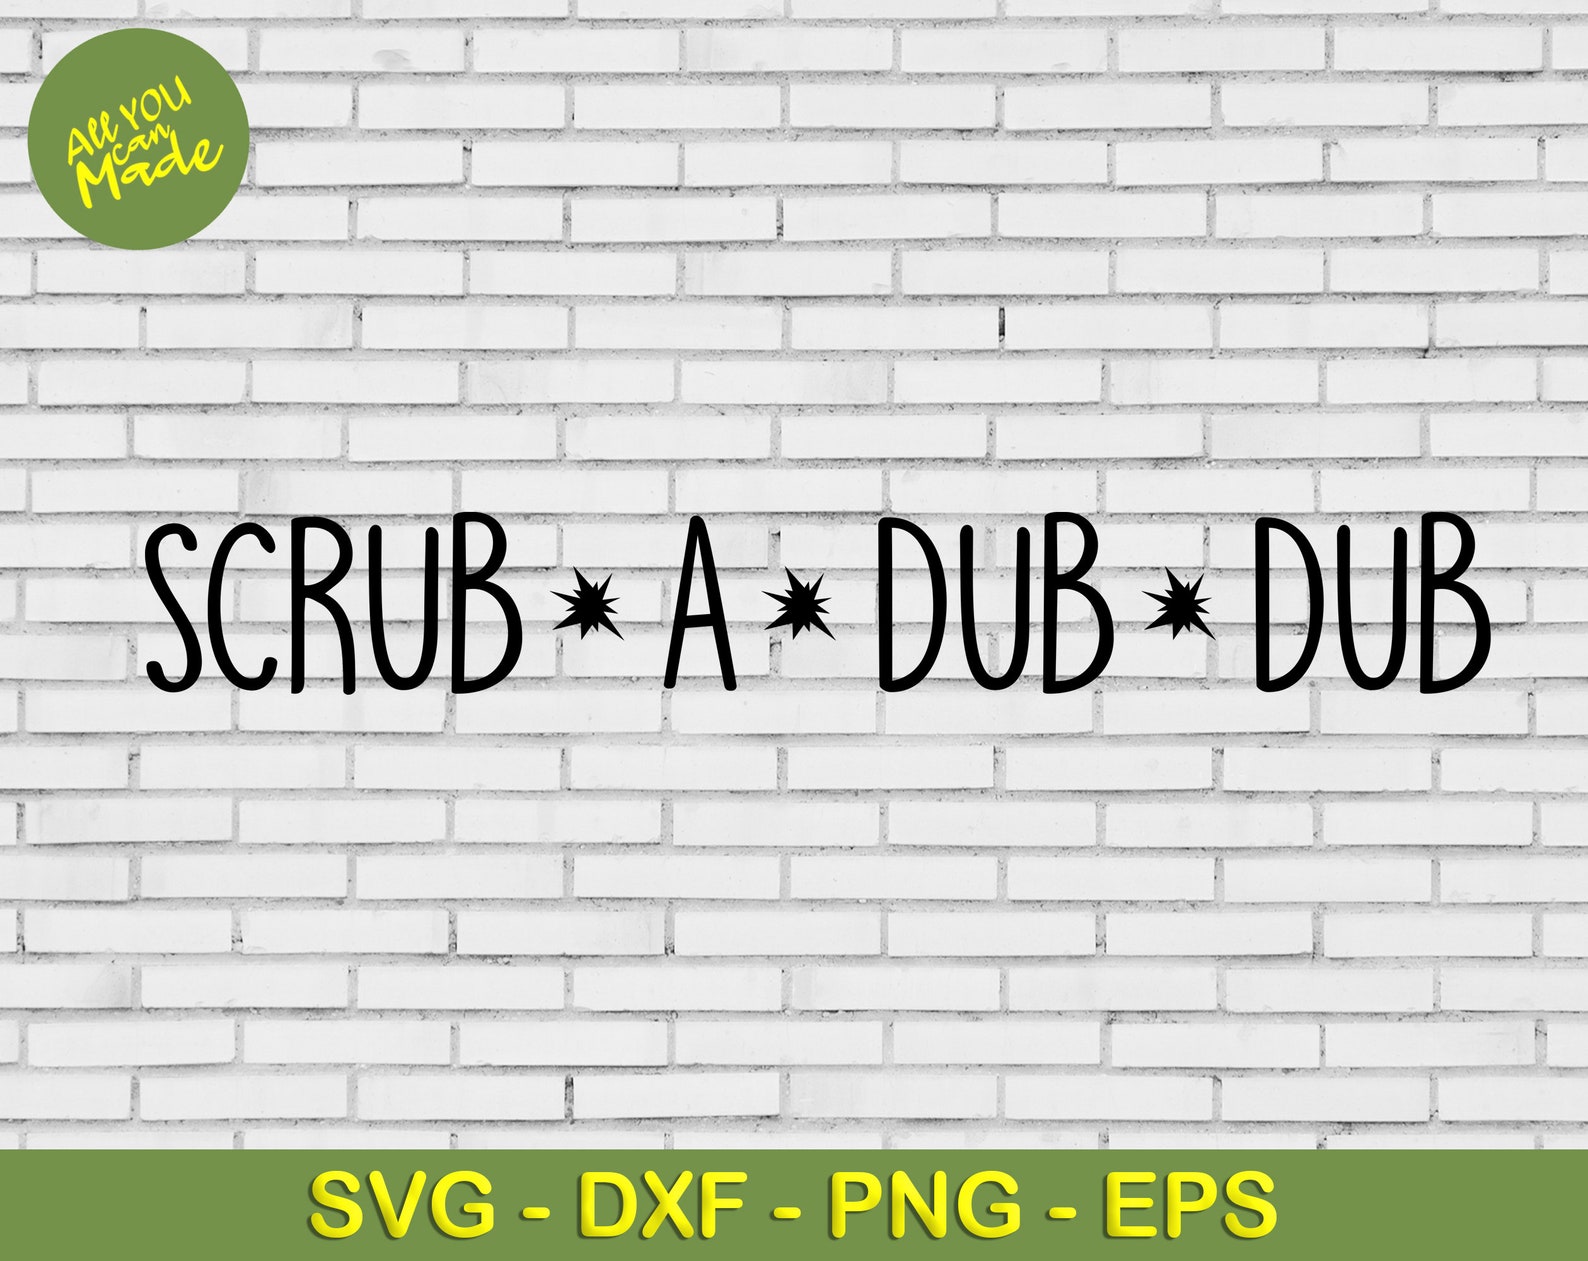 Scrub a dub dub Svg Dxf Png Eps Sublimation scrub a dub dub | Etsy